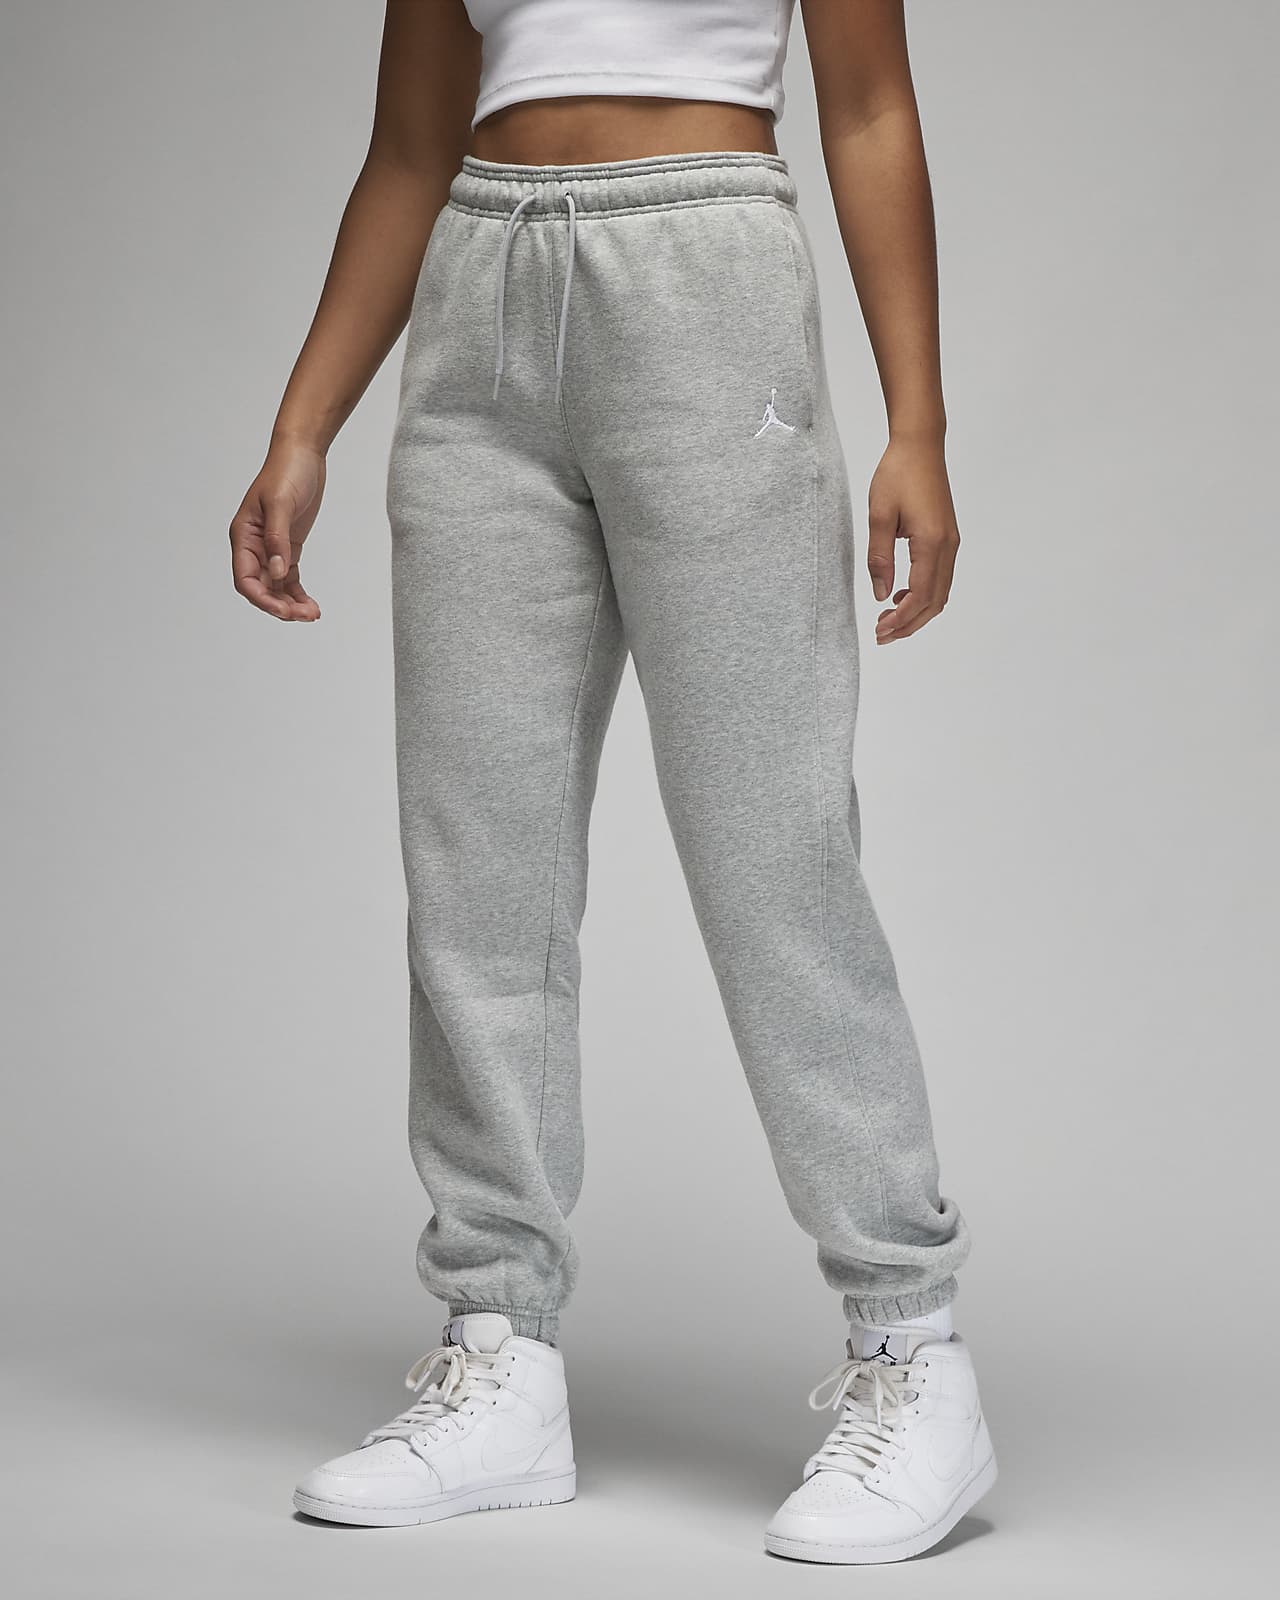 Jordan Brooklyn Fleece Women's Pants